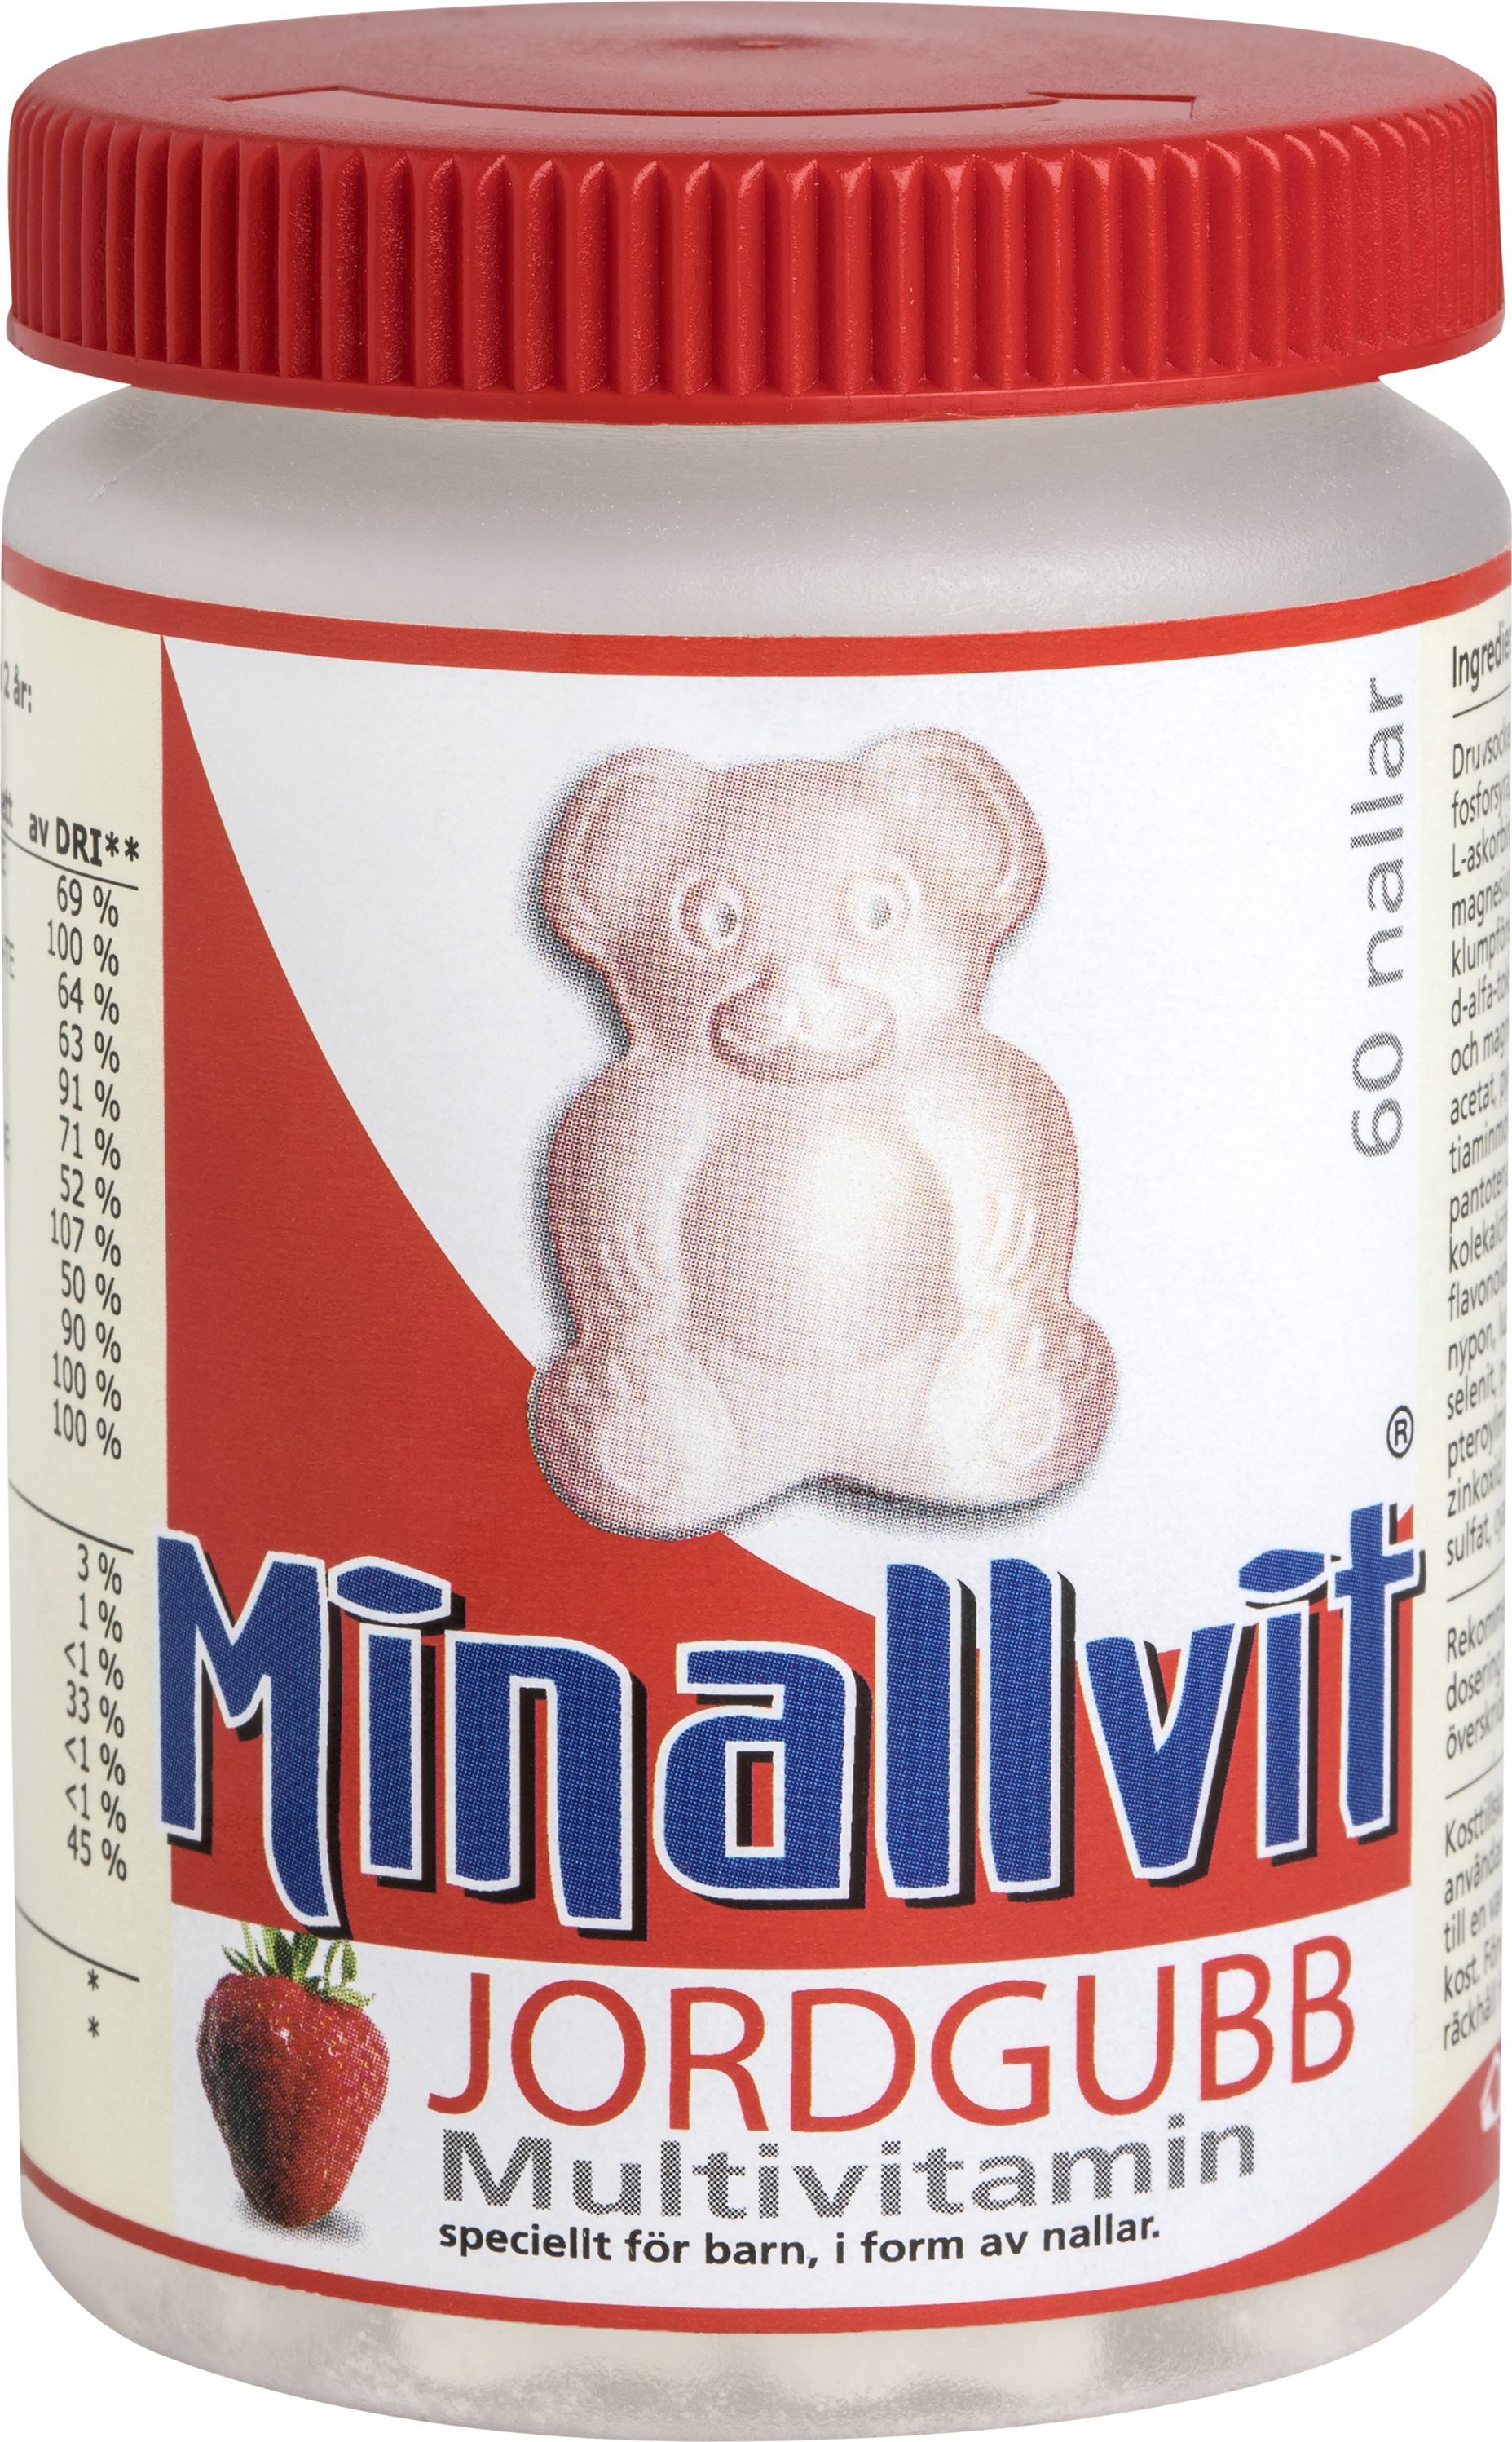 Minallvit Jordgubb Multivitamin 60 st